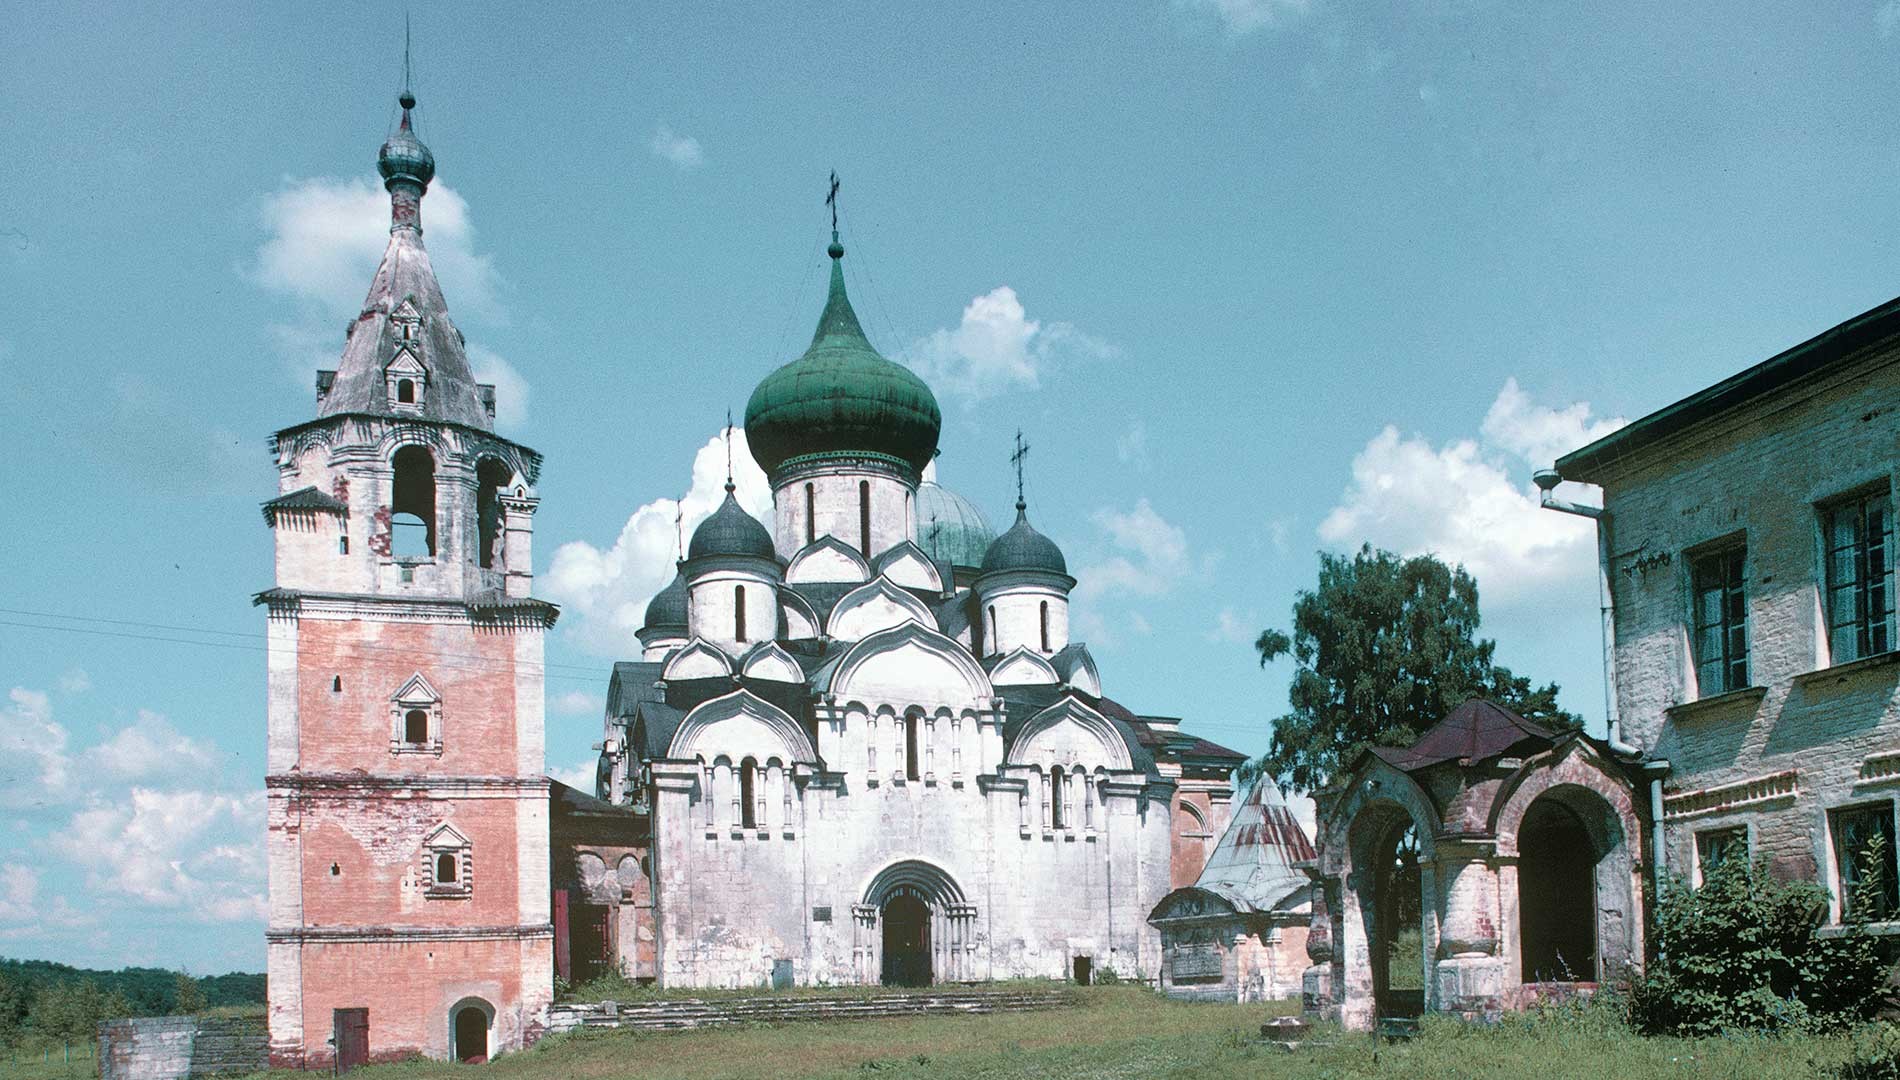 Staritsa. Monastero della Dormizione, vista sud. Da sinistra: campanile con cappella di San Giobbe; Cattedrale della Dormizione, mausoleo di Ivan Glebov, camere dell’abate. 21 luglio 1997